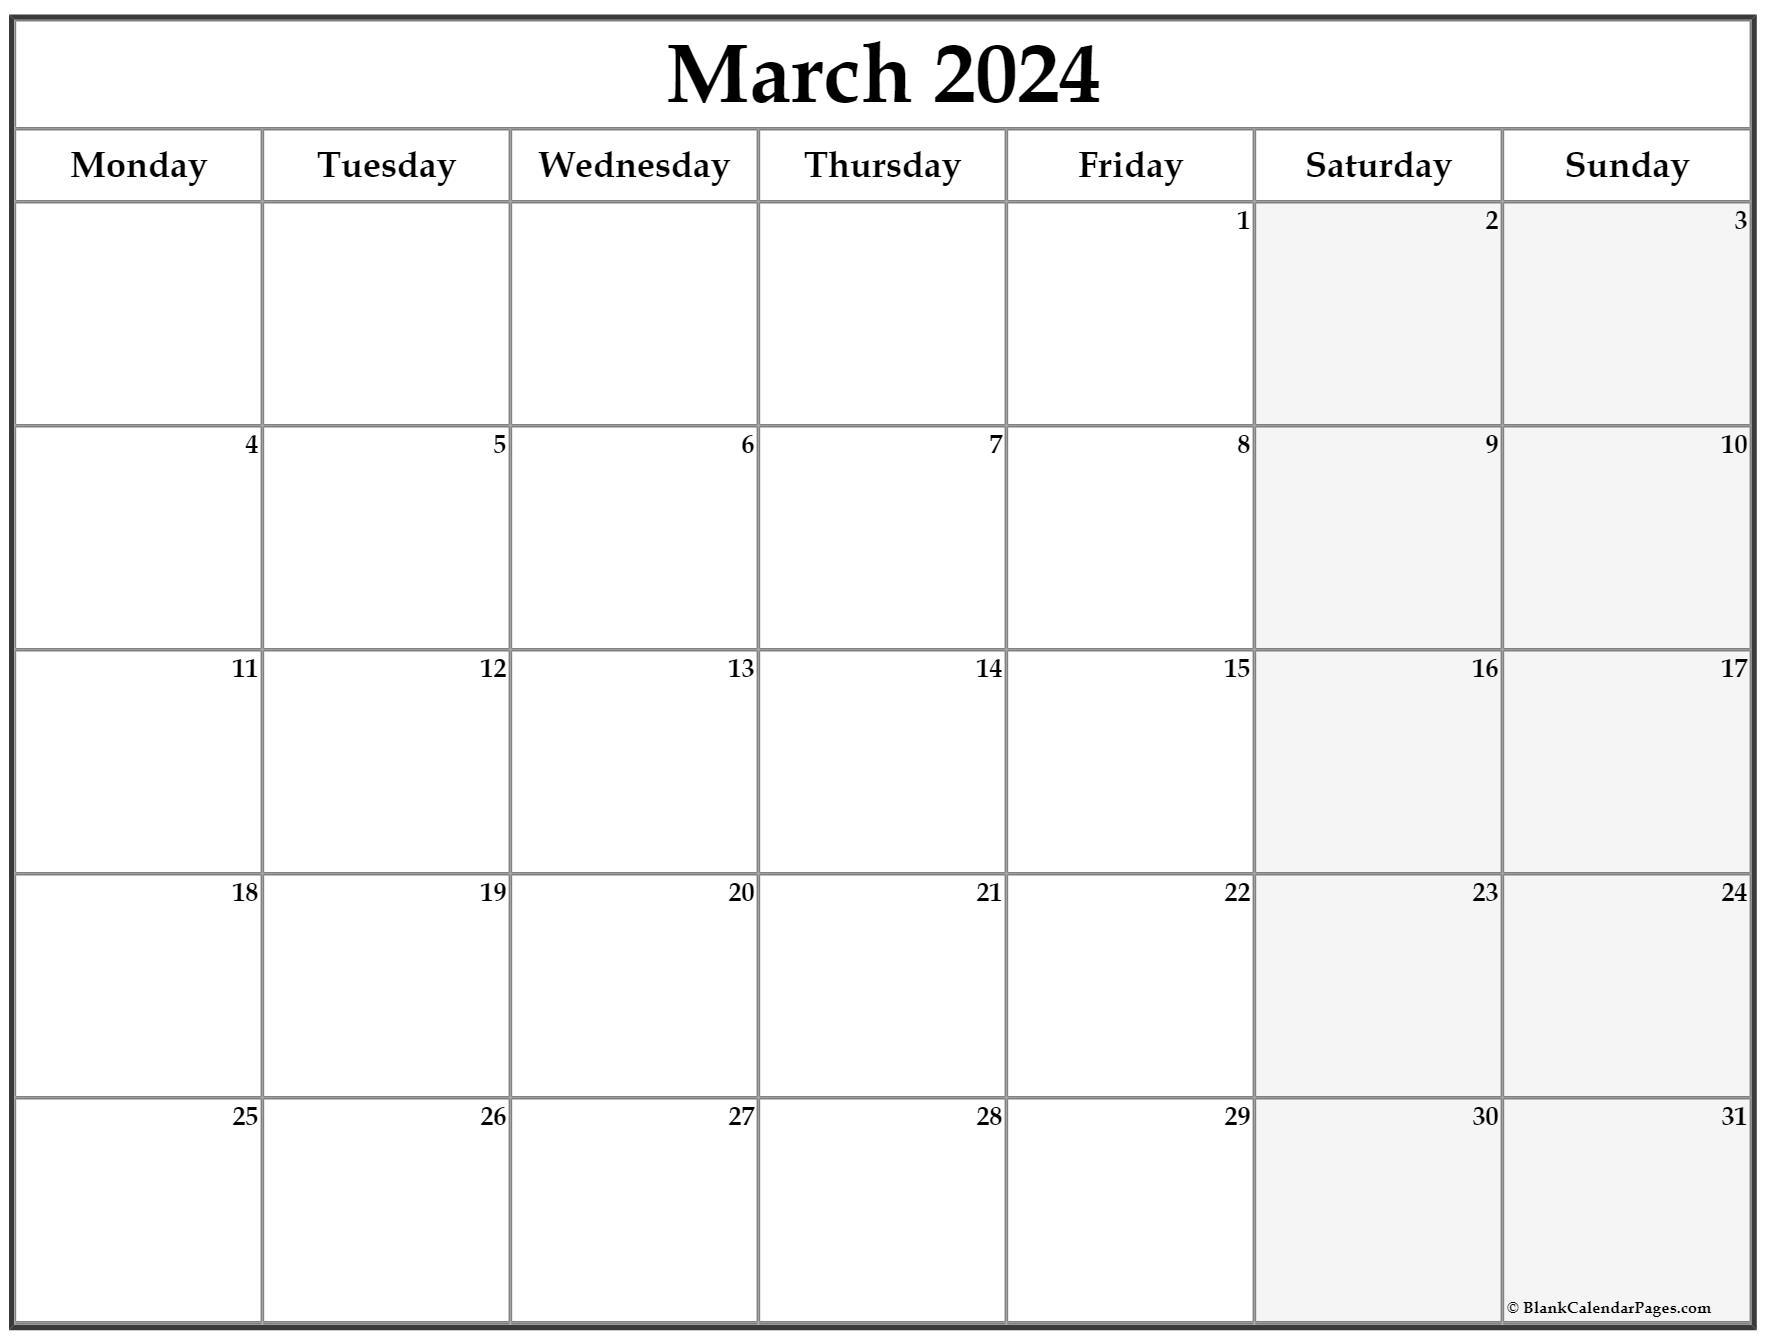 March 2021 Calendar Starting Monday | Calendar 2021